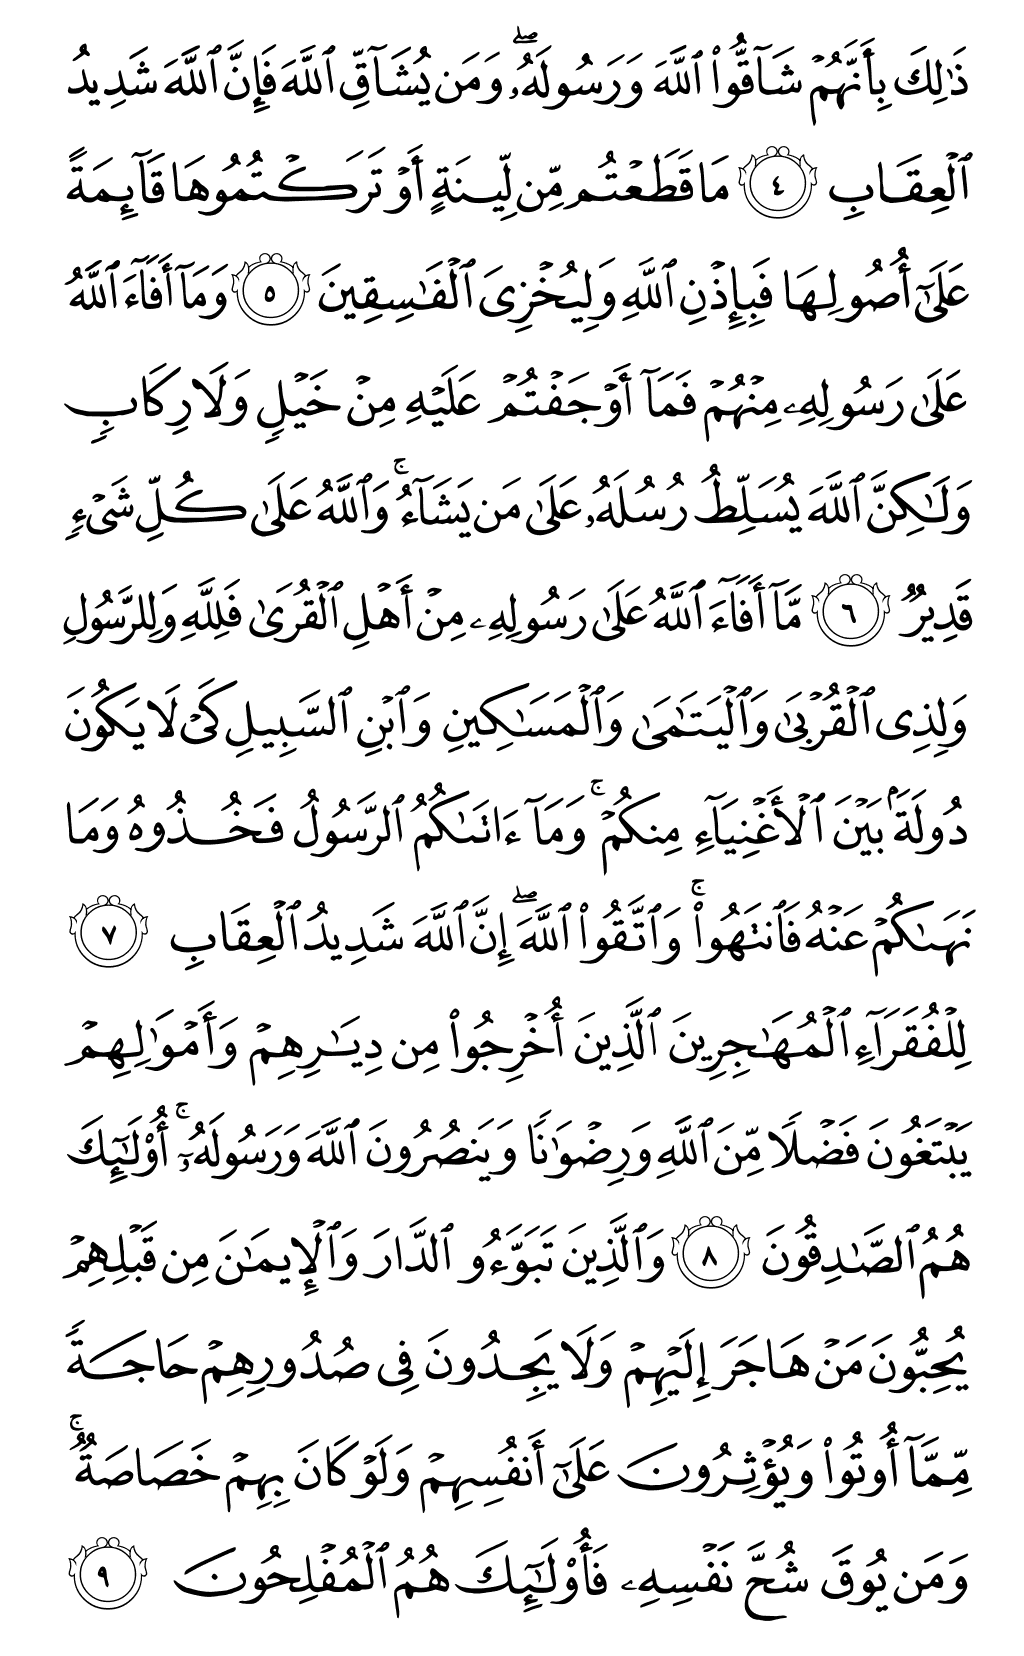 الصفحة رقم 546 من القرآن الكريم